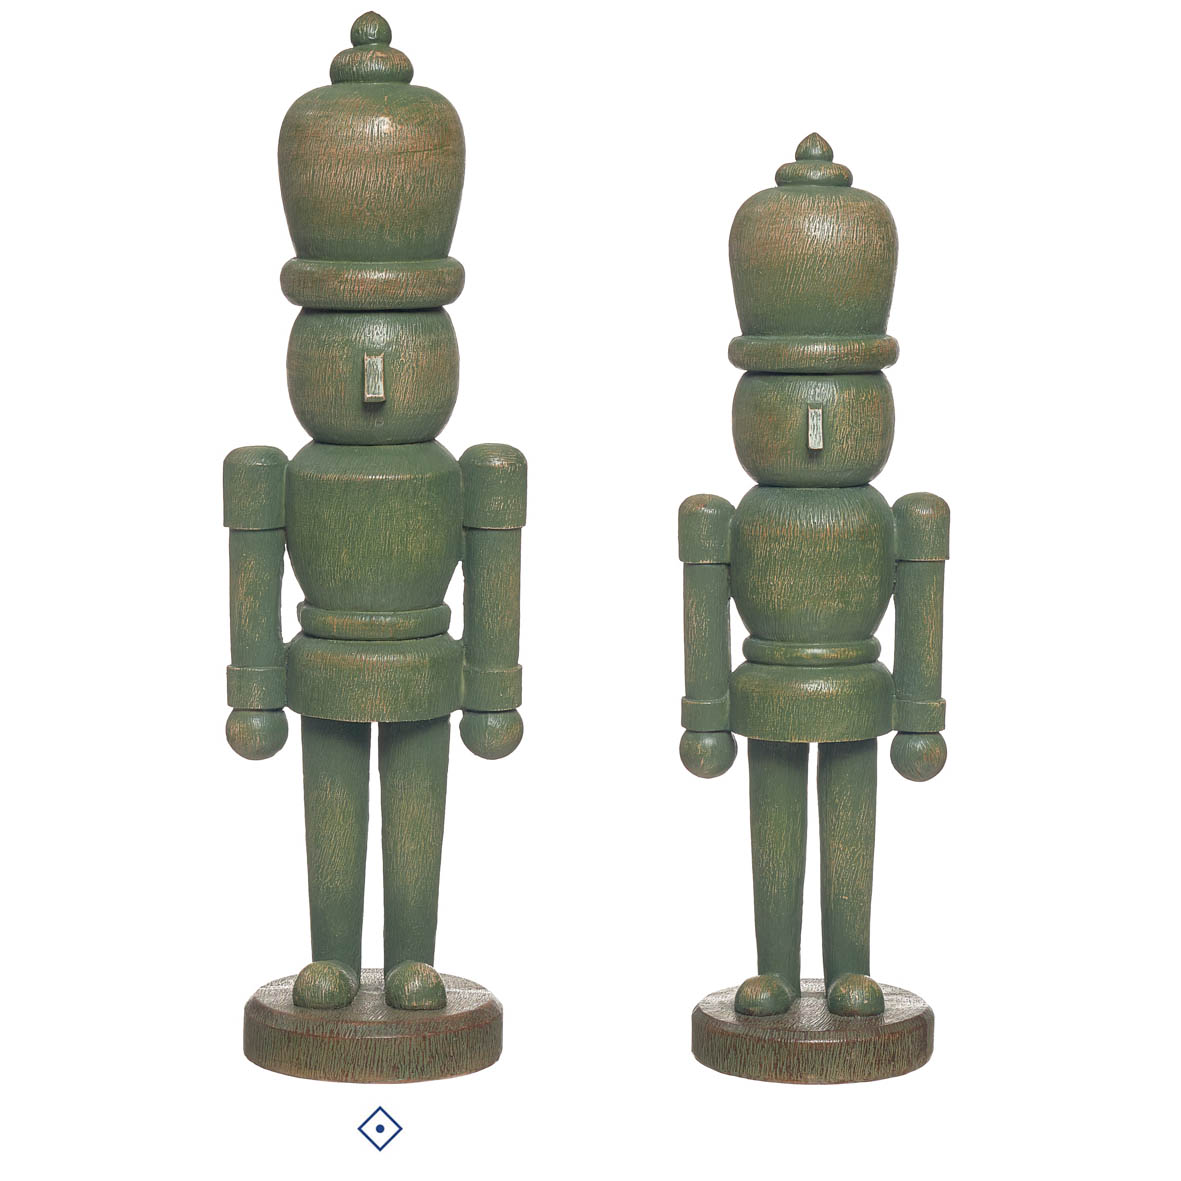 Joca Home Concept 37Cm Christmas Green Nutcracker Figurine 